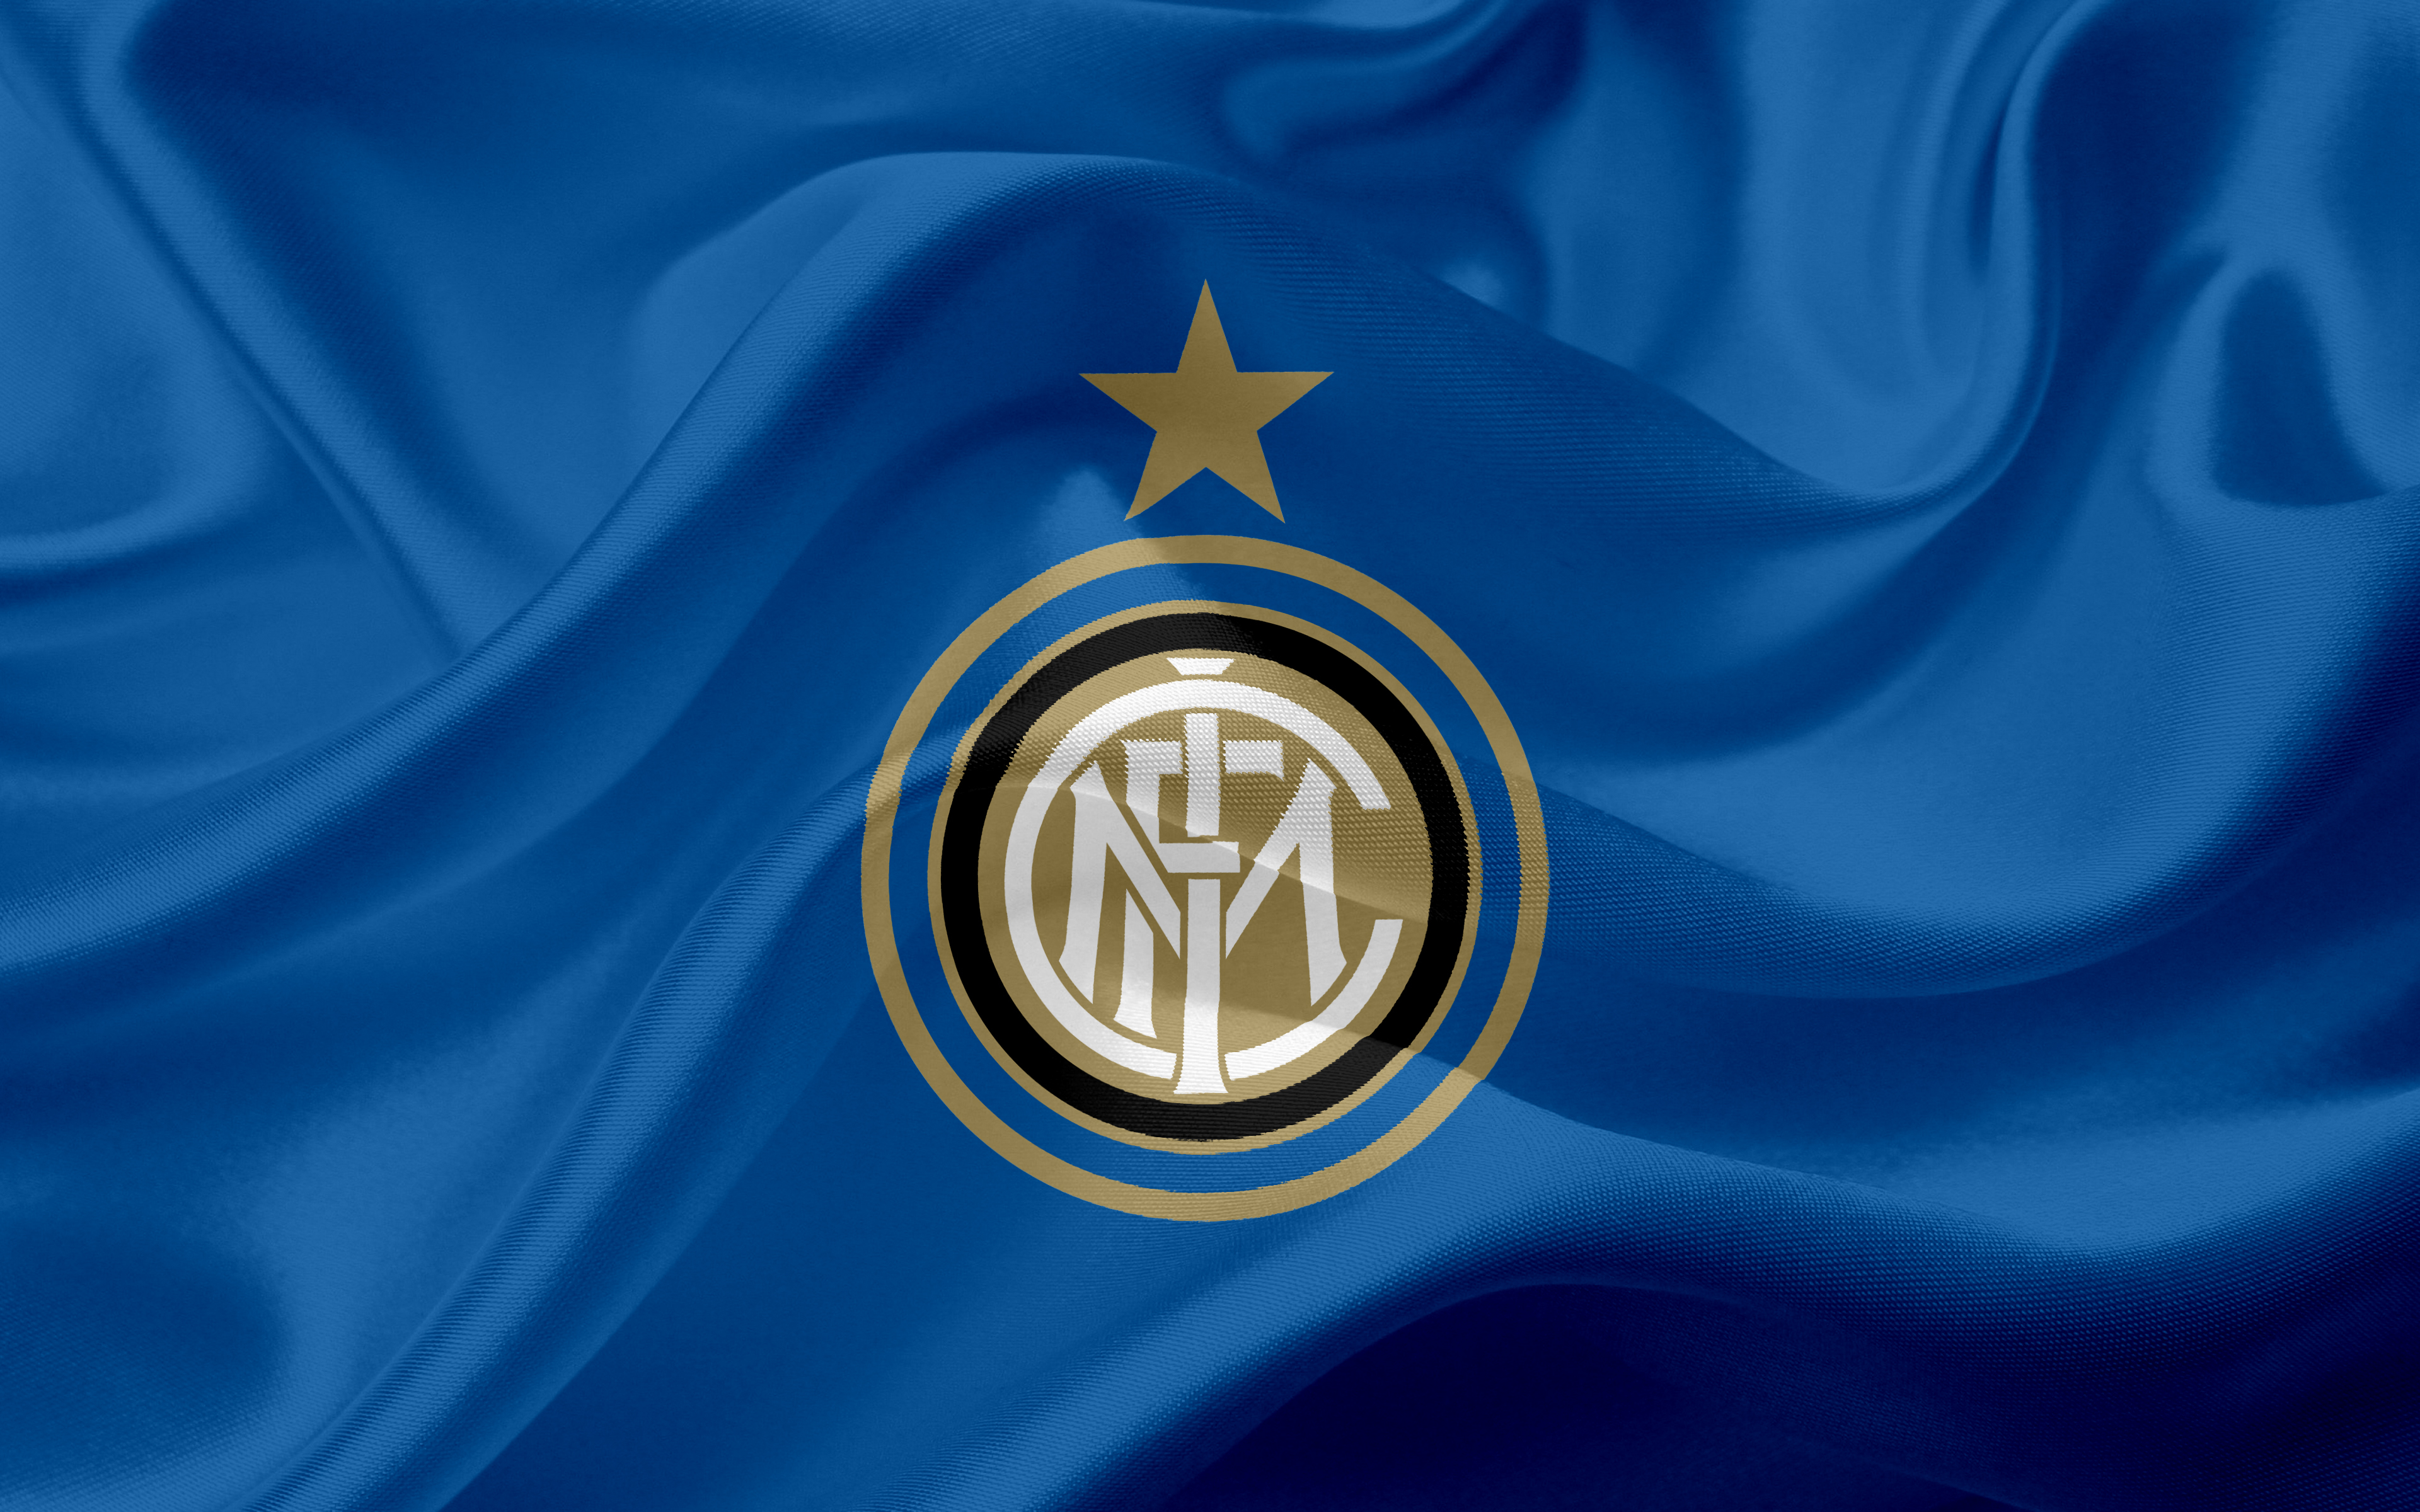 Inter Milan - HD Wallpaper 